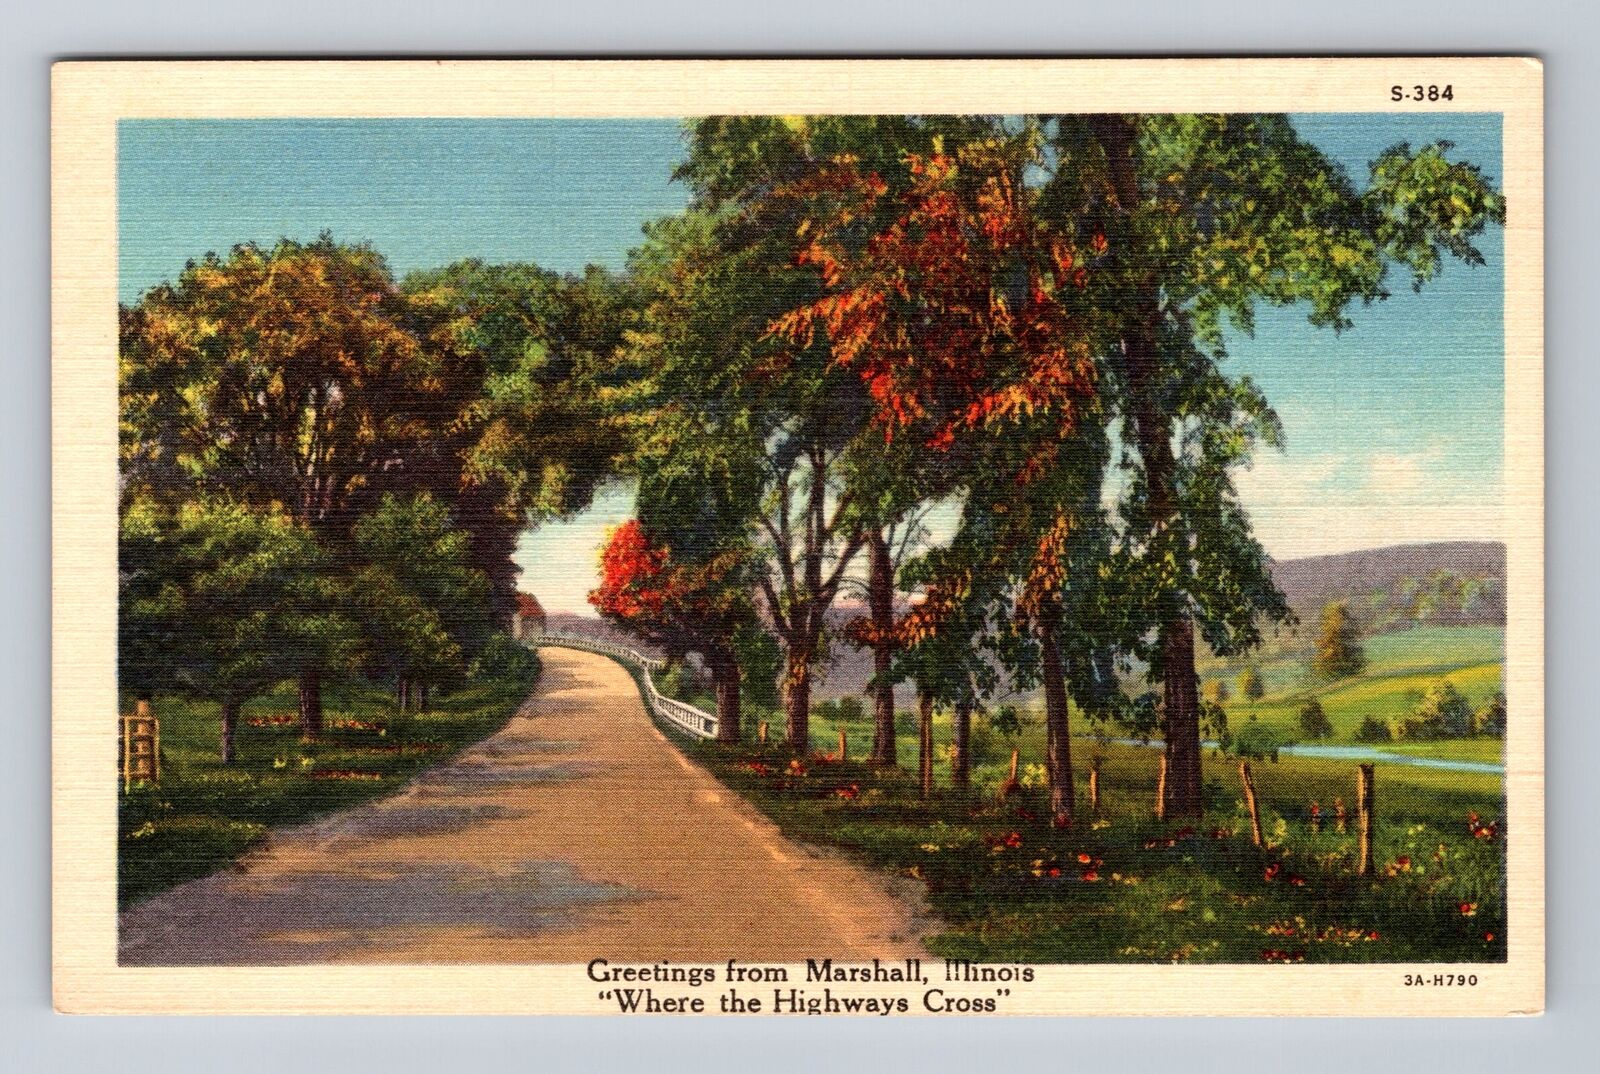 Marshall IL-Illinois, Greetings from Marshall, Antique Vintage Postcard